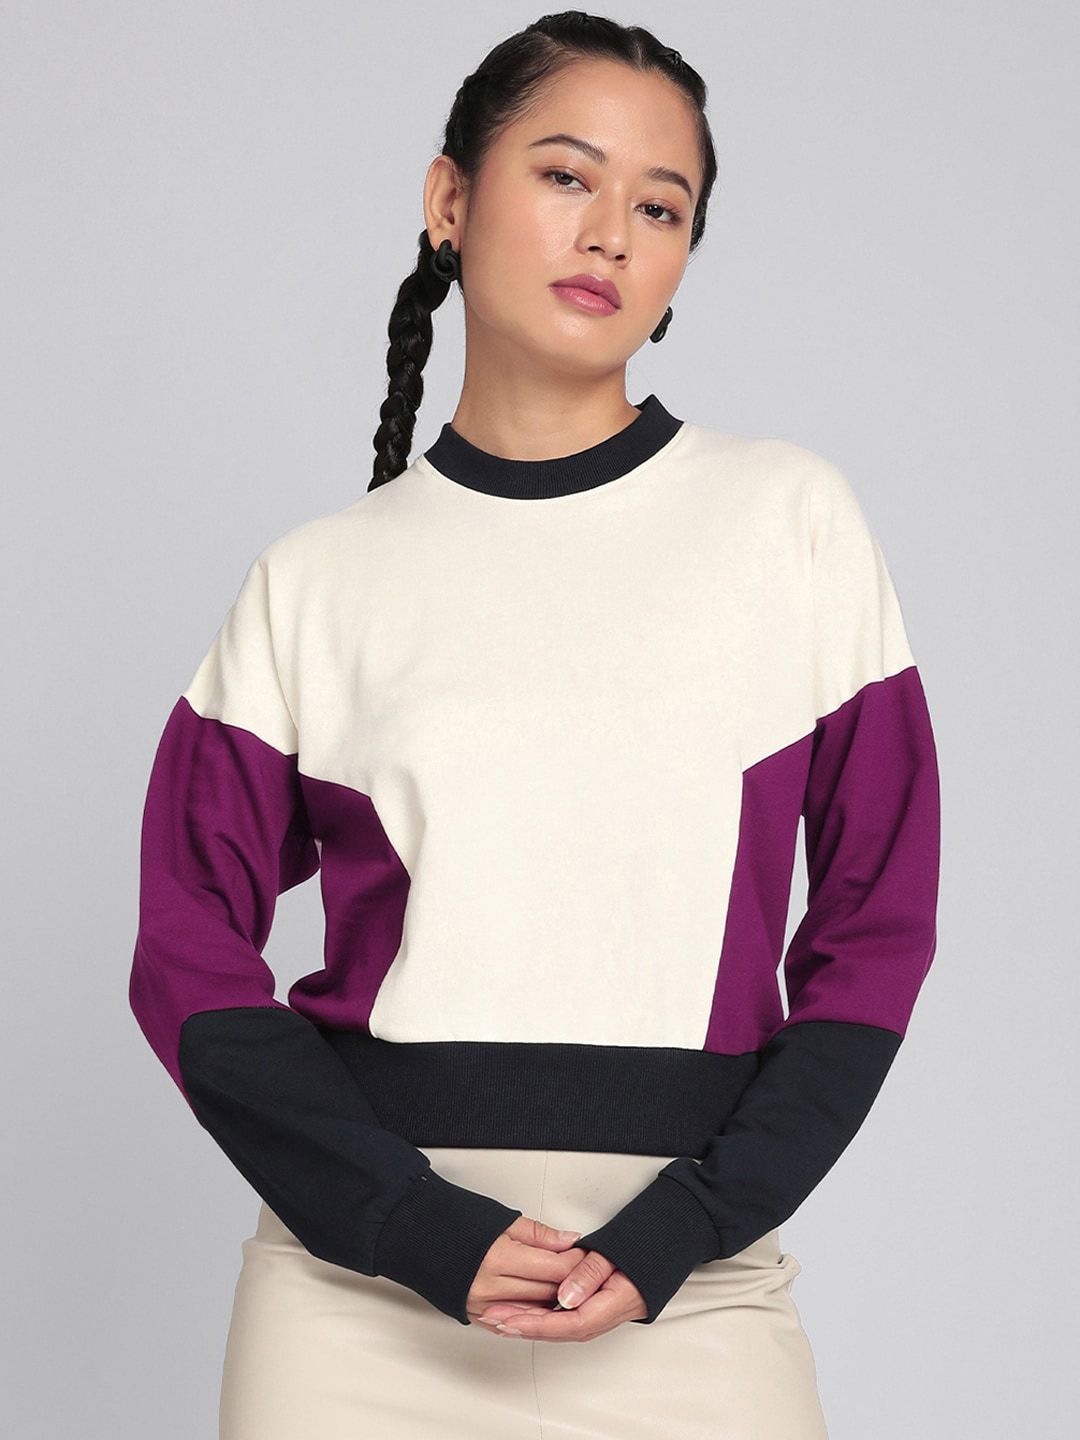 Bewakoof Women Purple & White Colourblocked Sweatshirt Price in India